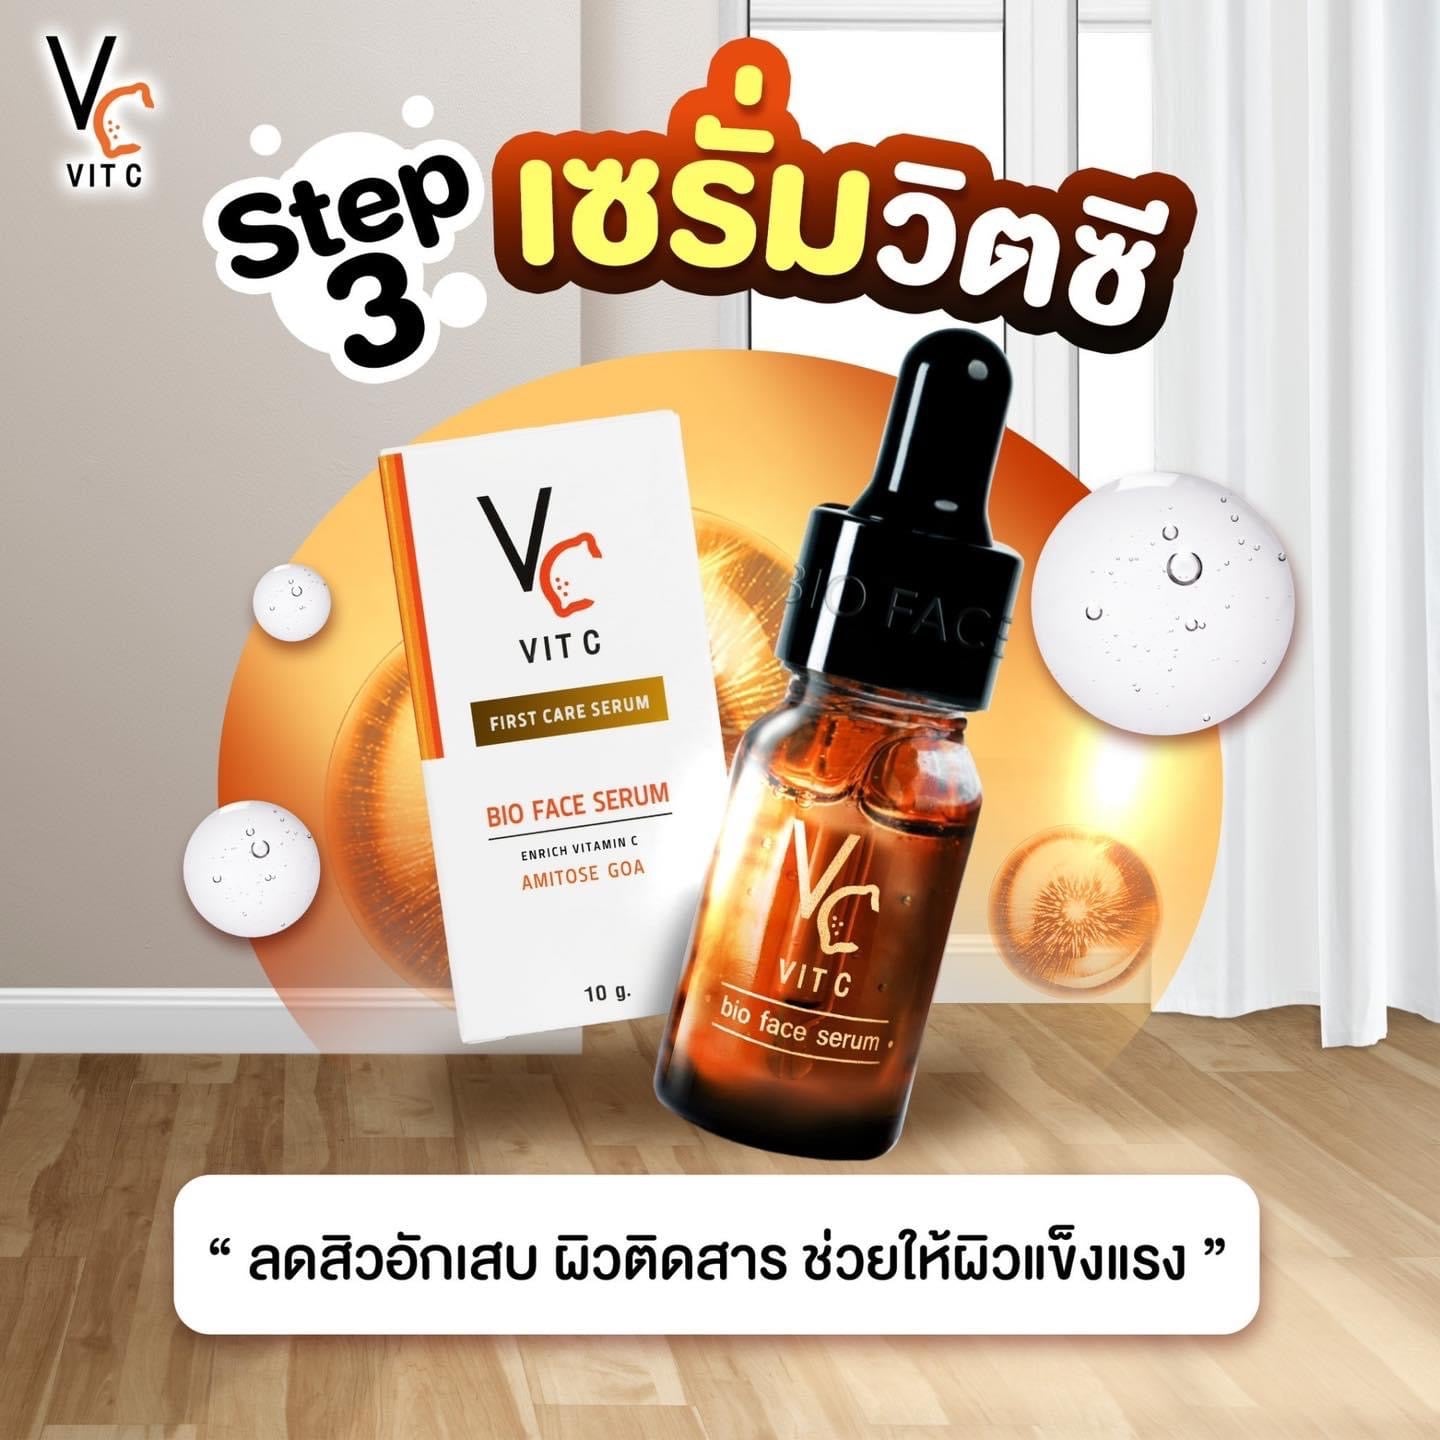 VC Vit C Ance & Whitening Soap 30 g.